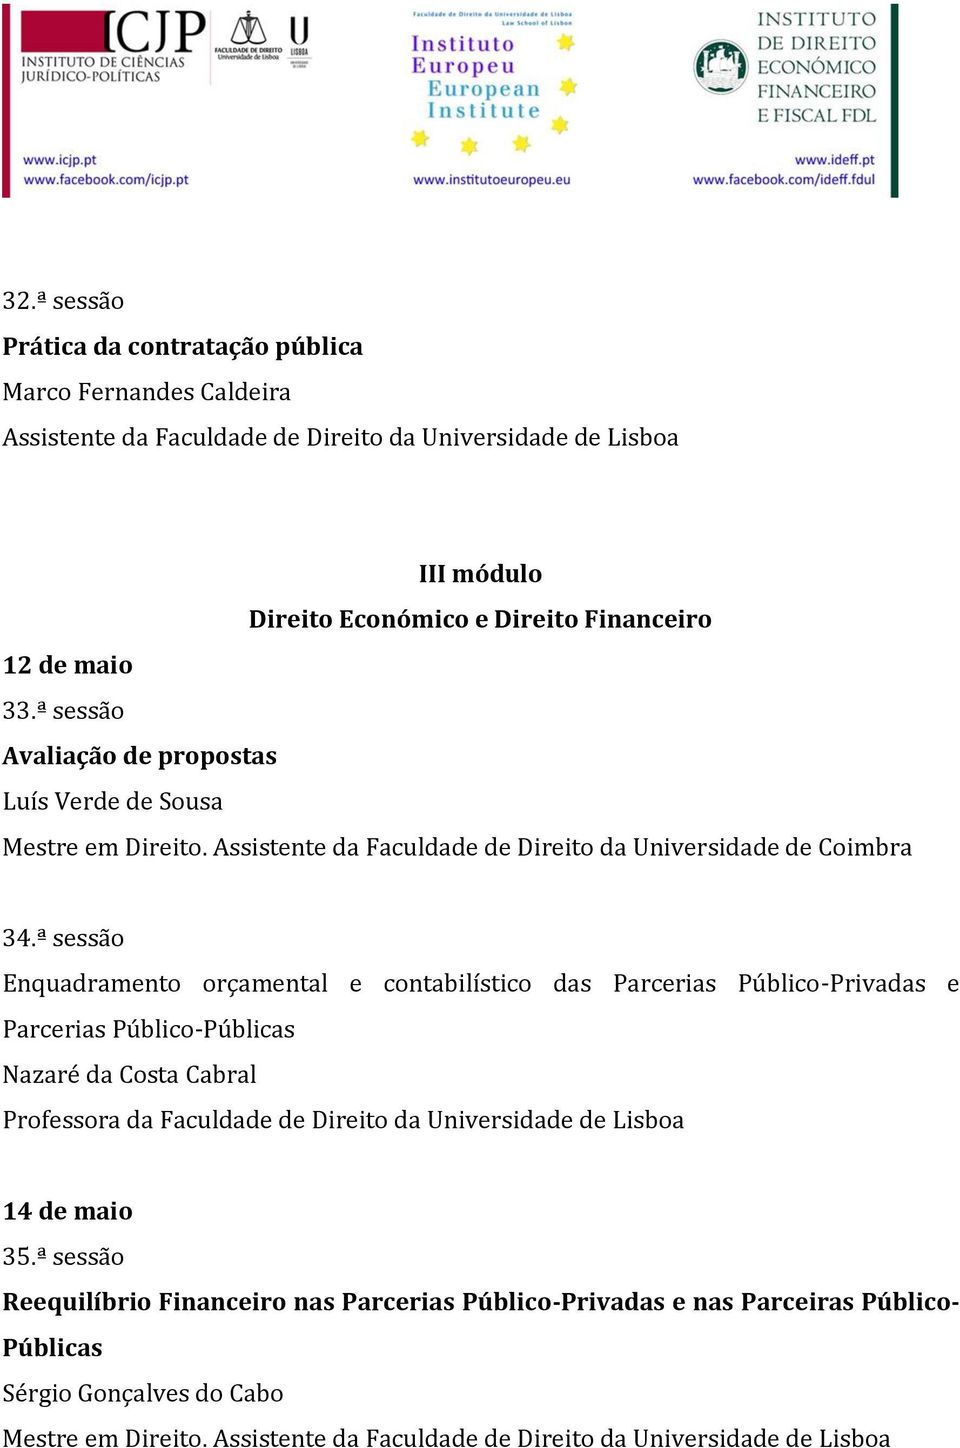 ª sessão Enquadramento orçamental e contabilístico das Parcerias Público-Privadas e Parcerias Público-Públicas Nazaré da Costa Cabral 14 de maio 35.